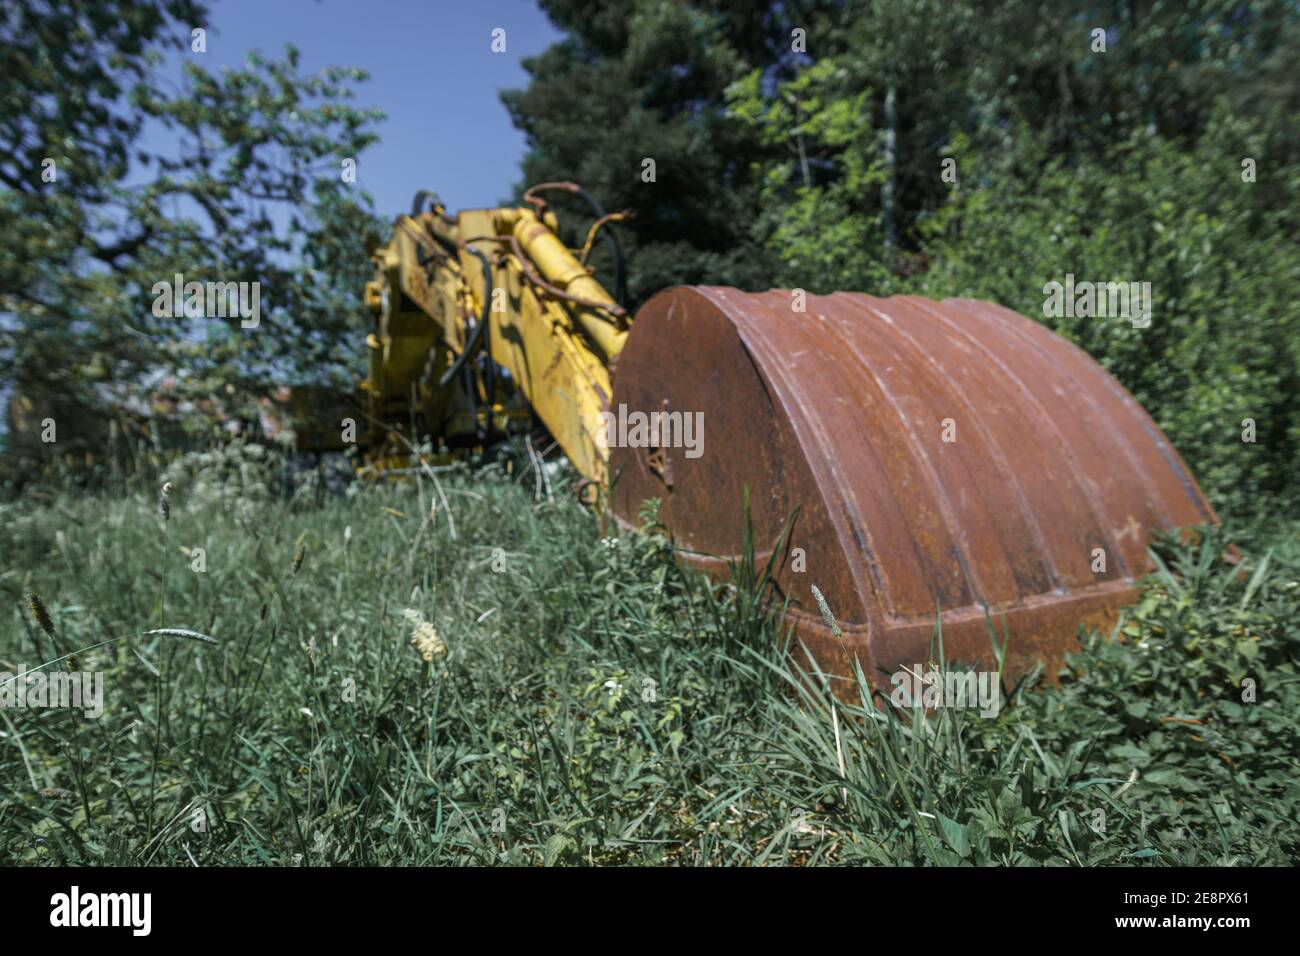 Viejo excavador abandonado con una gran pala oxidada en primer plano rodeado de plantas verdes Foto de stock